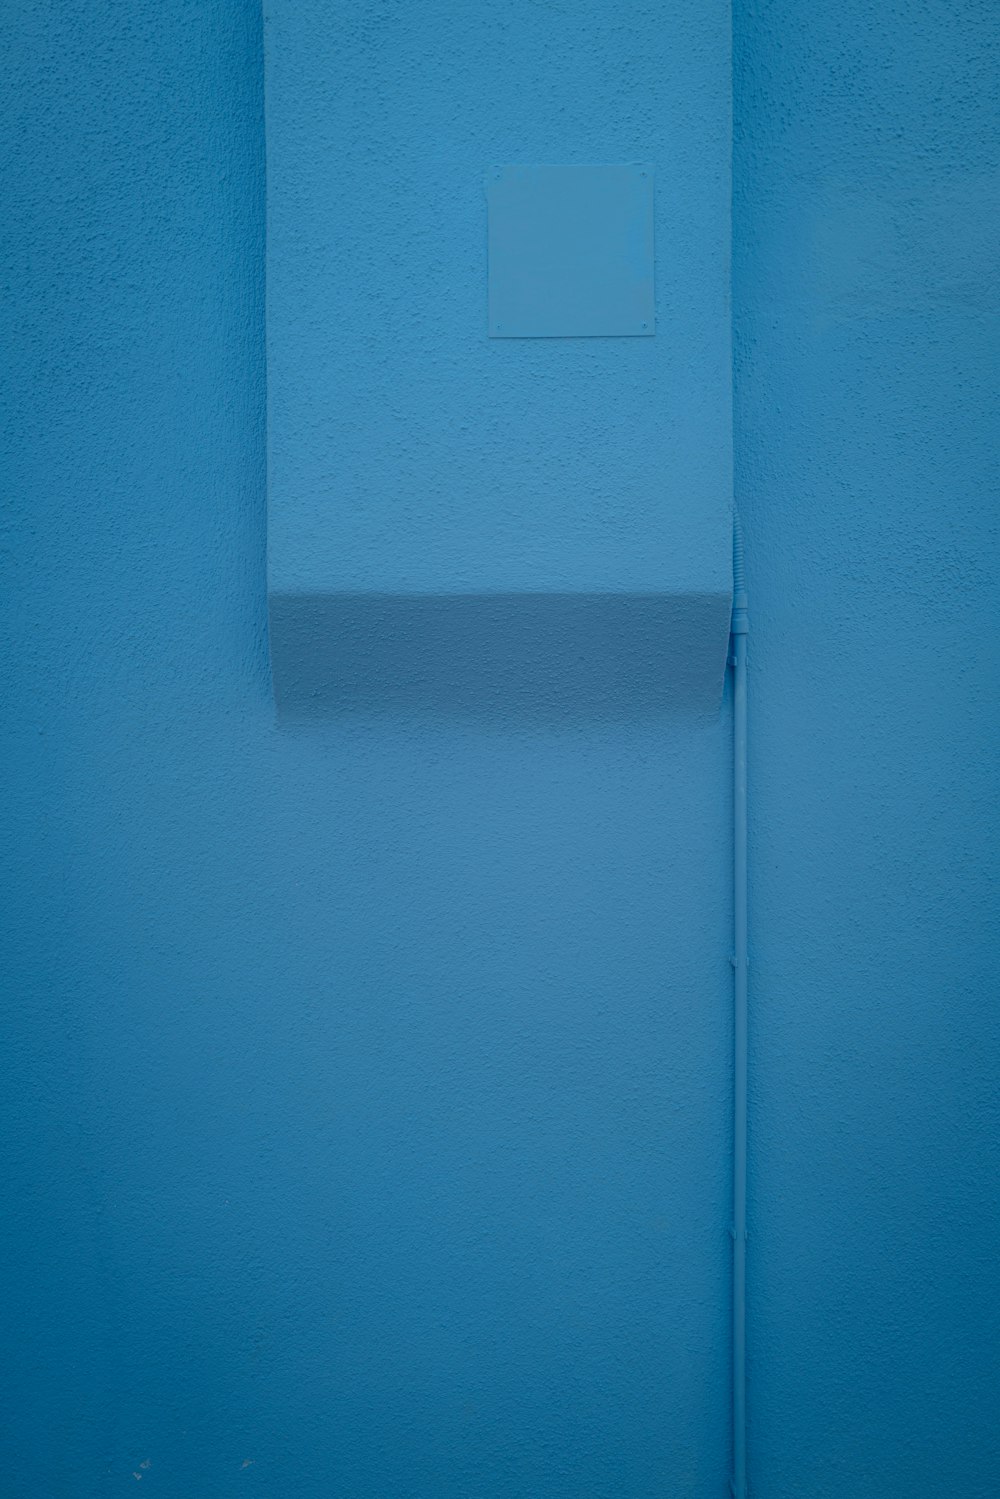 Interrupteur de lumière blanche sur mur bleu